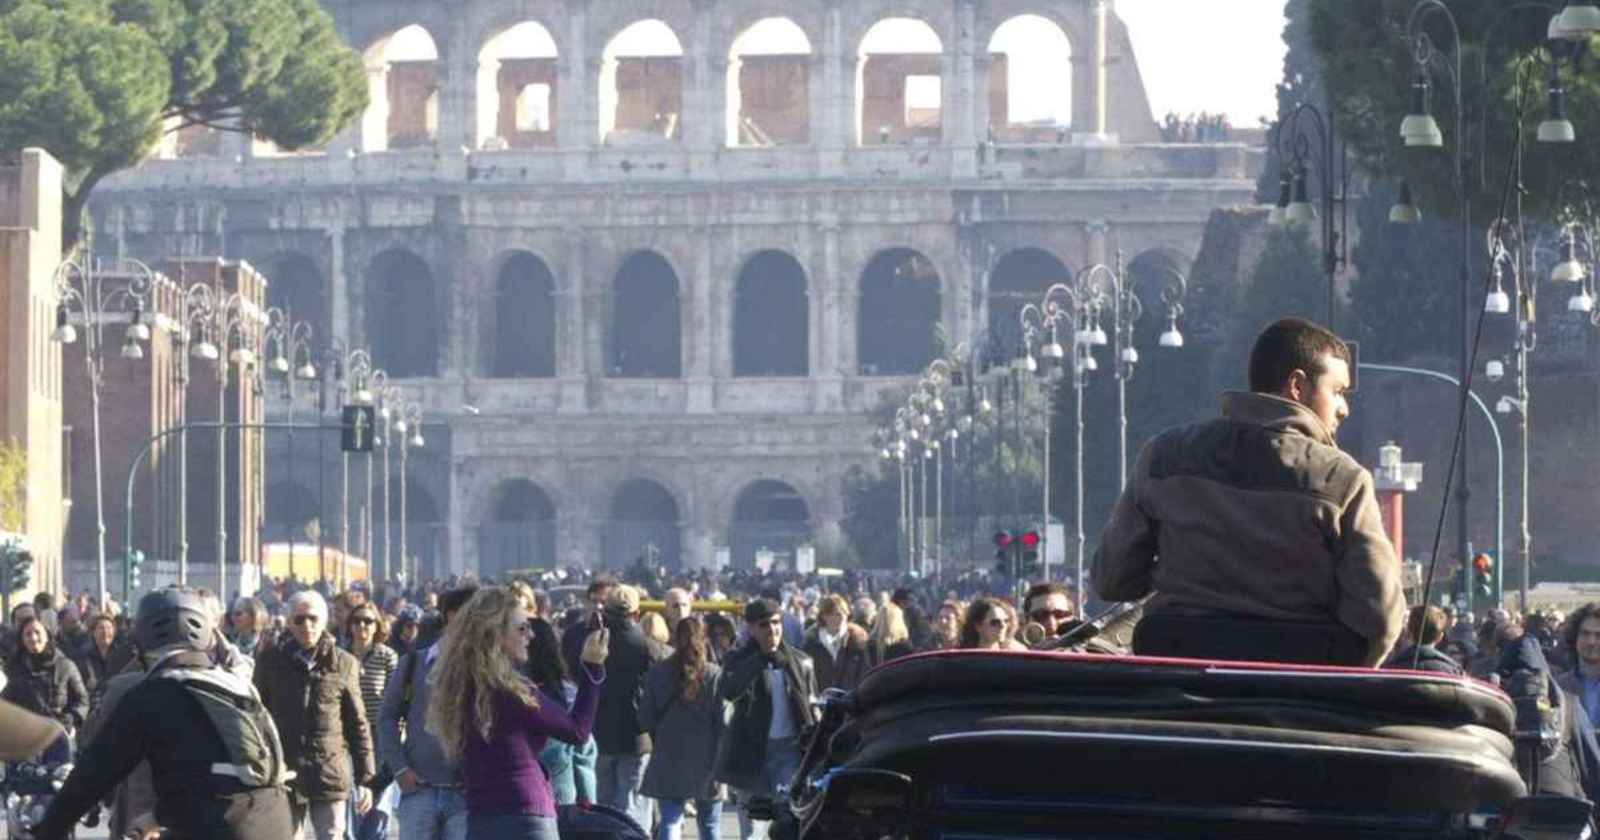 METEO ROMA - NUVOLOSITA' in transito poi ampie SCHIARITE e TEMPERATURE in aumento; le previsioni